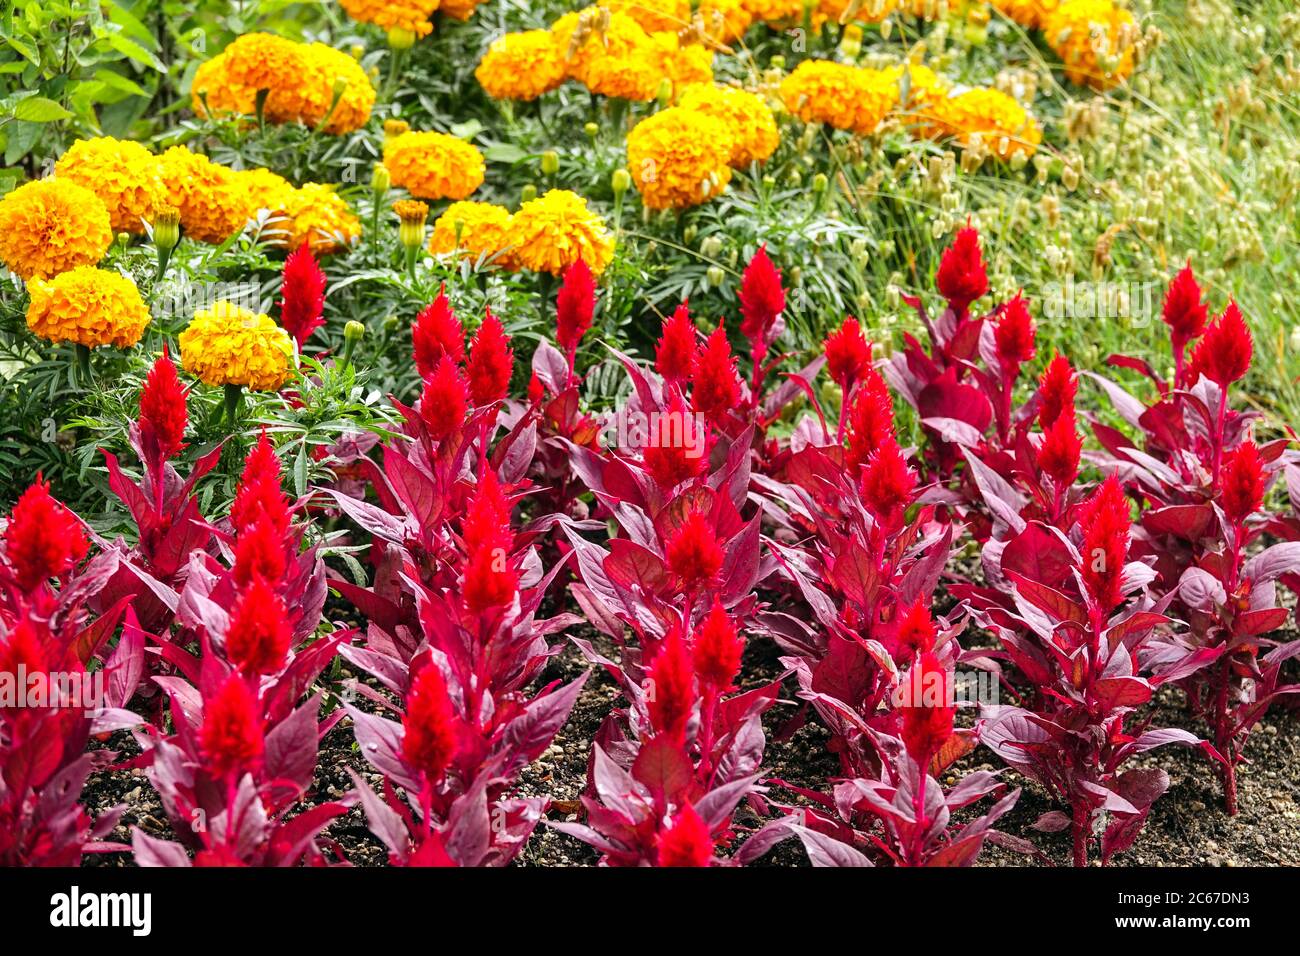 Rouge Celosia 'Smart look Red' lit de fleurs Tagetes, litière d'été plantes bordure de jardin, fleurs colorées, soucis jaunes Banque D'Images